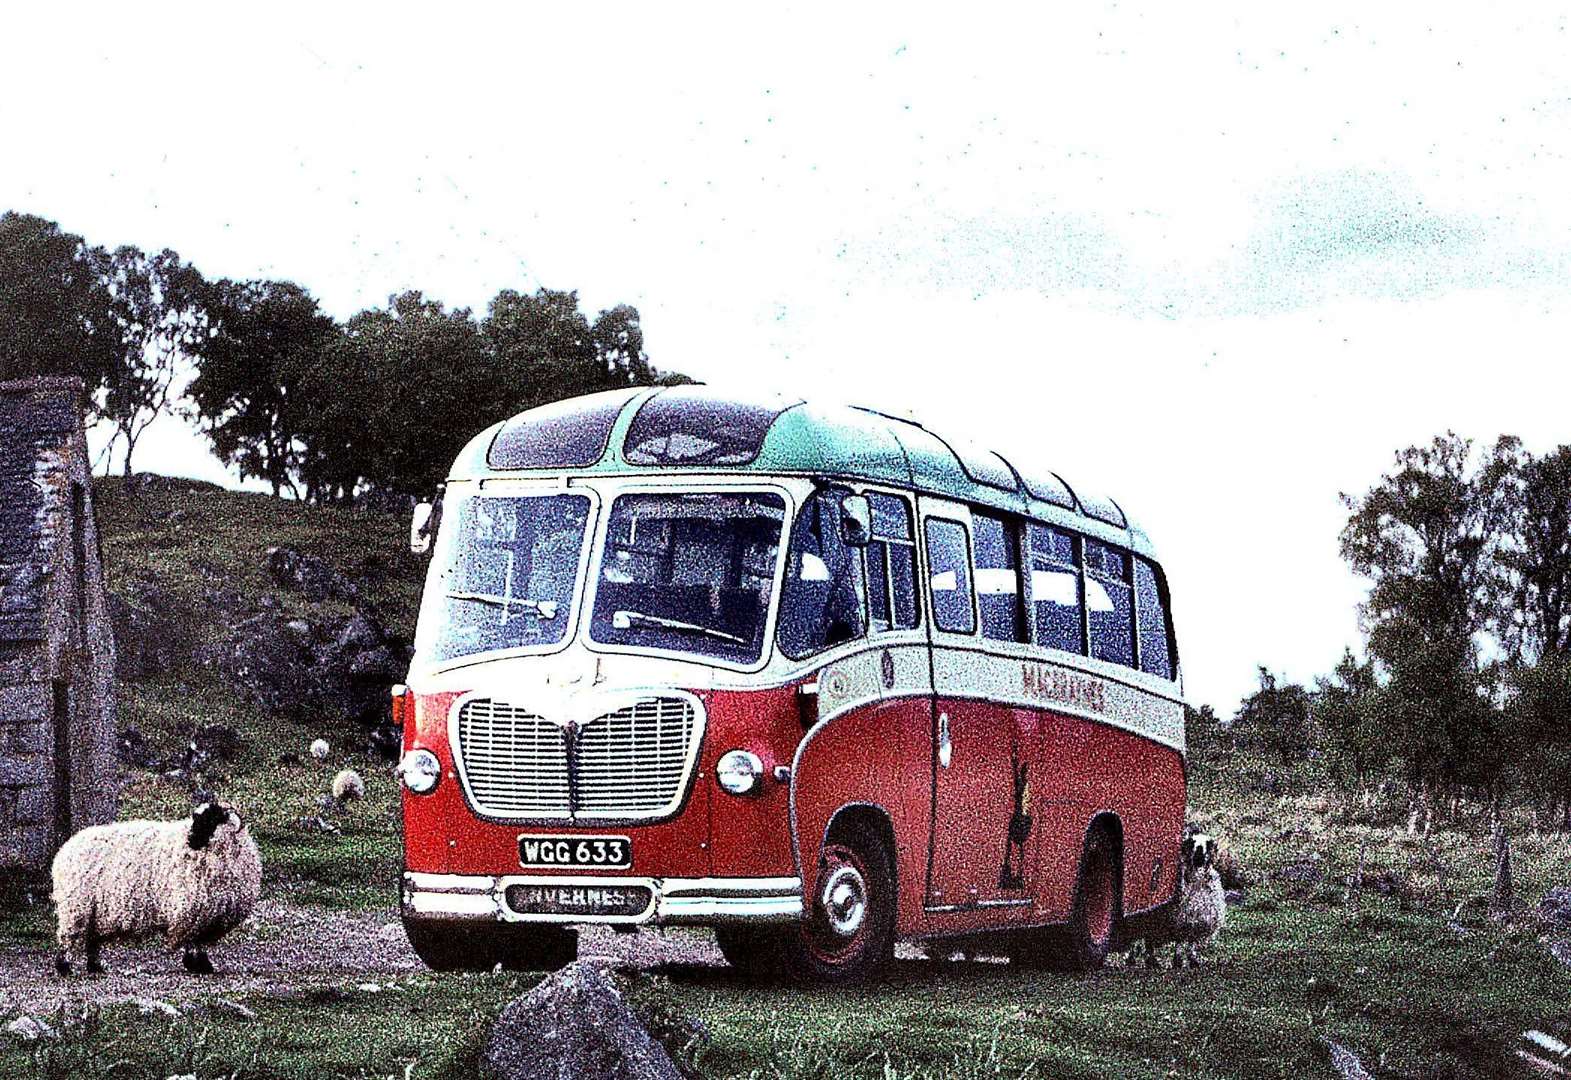 over 60 bus travel scotland